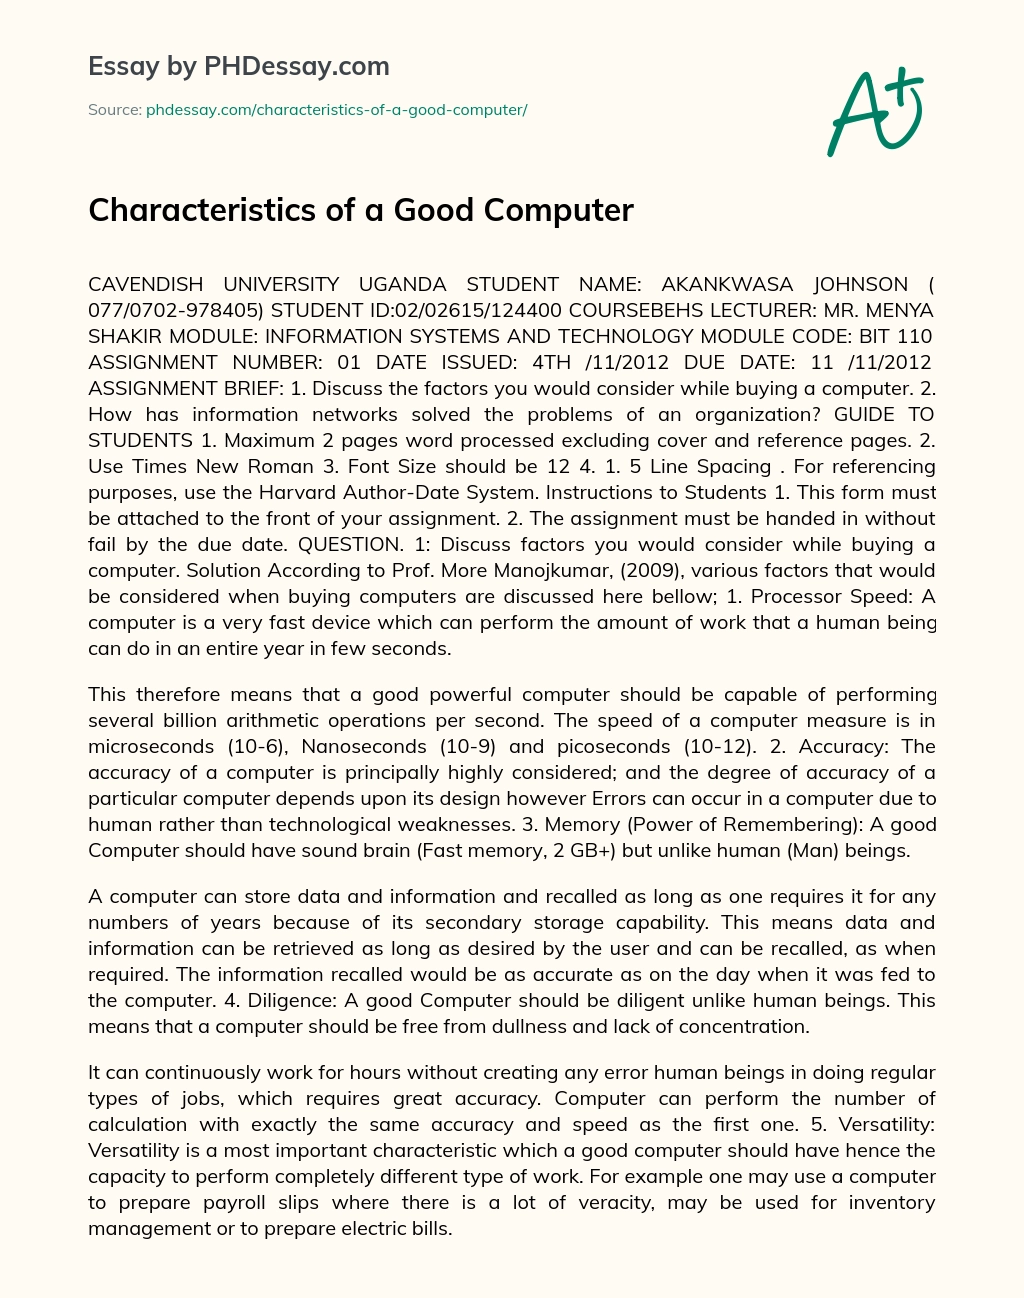 Characteristics of a Good Computer essay